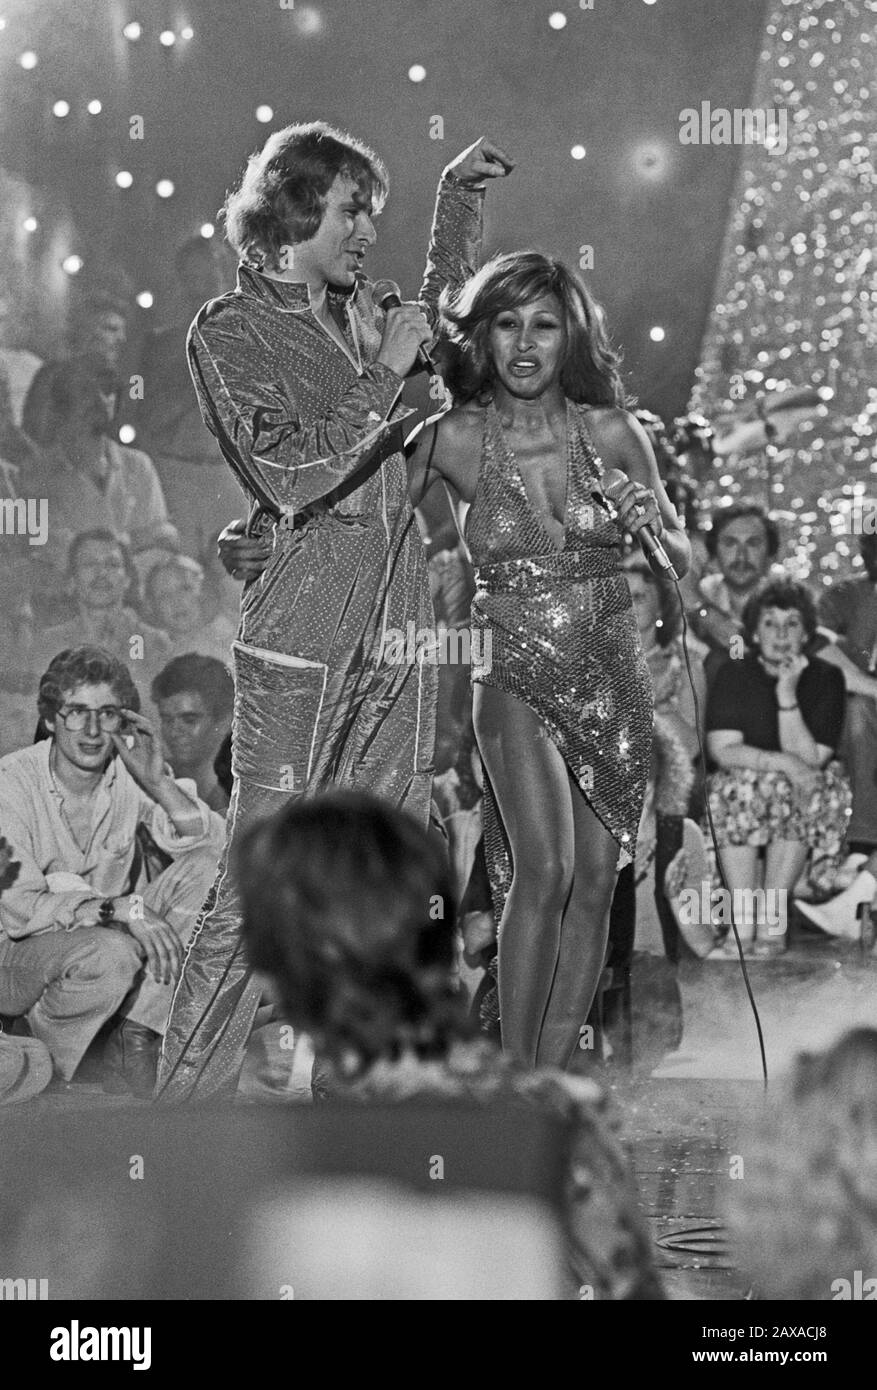 Tina Turner, amerikanische Sängerin und Schauspielerin, bei einem Auftritt im deutschen Fernsehen bei Thomas Gottschalk in Hamburg, Deutschland 1982. American singer and actress Tina Turner performing in a show on German TV at Hamburg, Germany 1982. Stock Photo